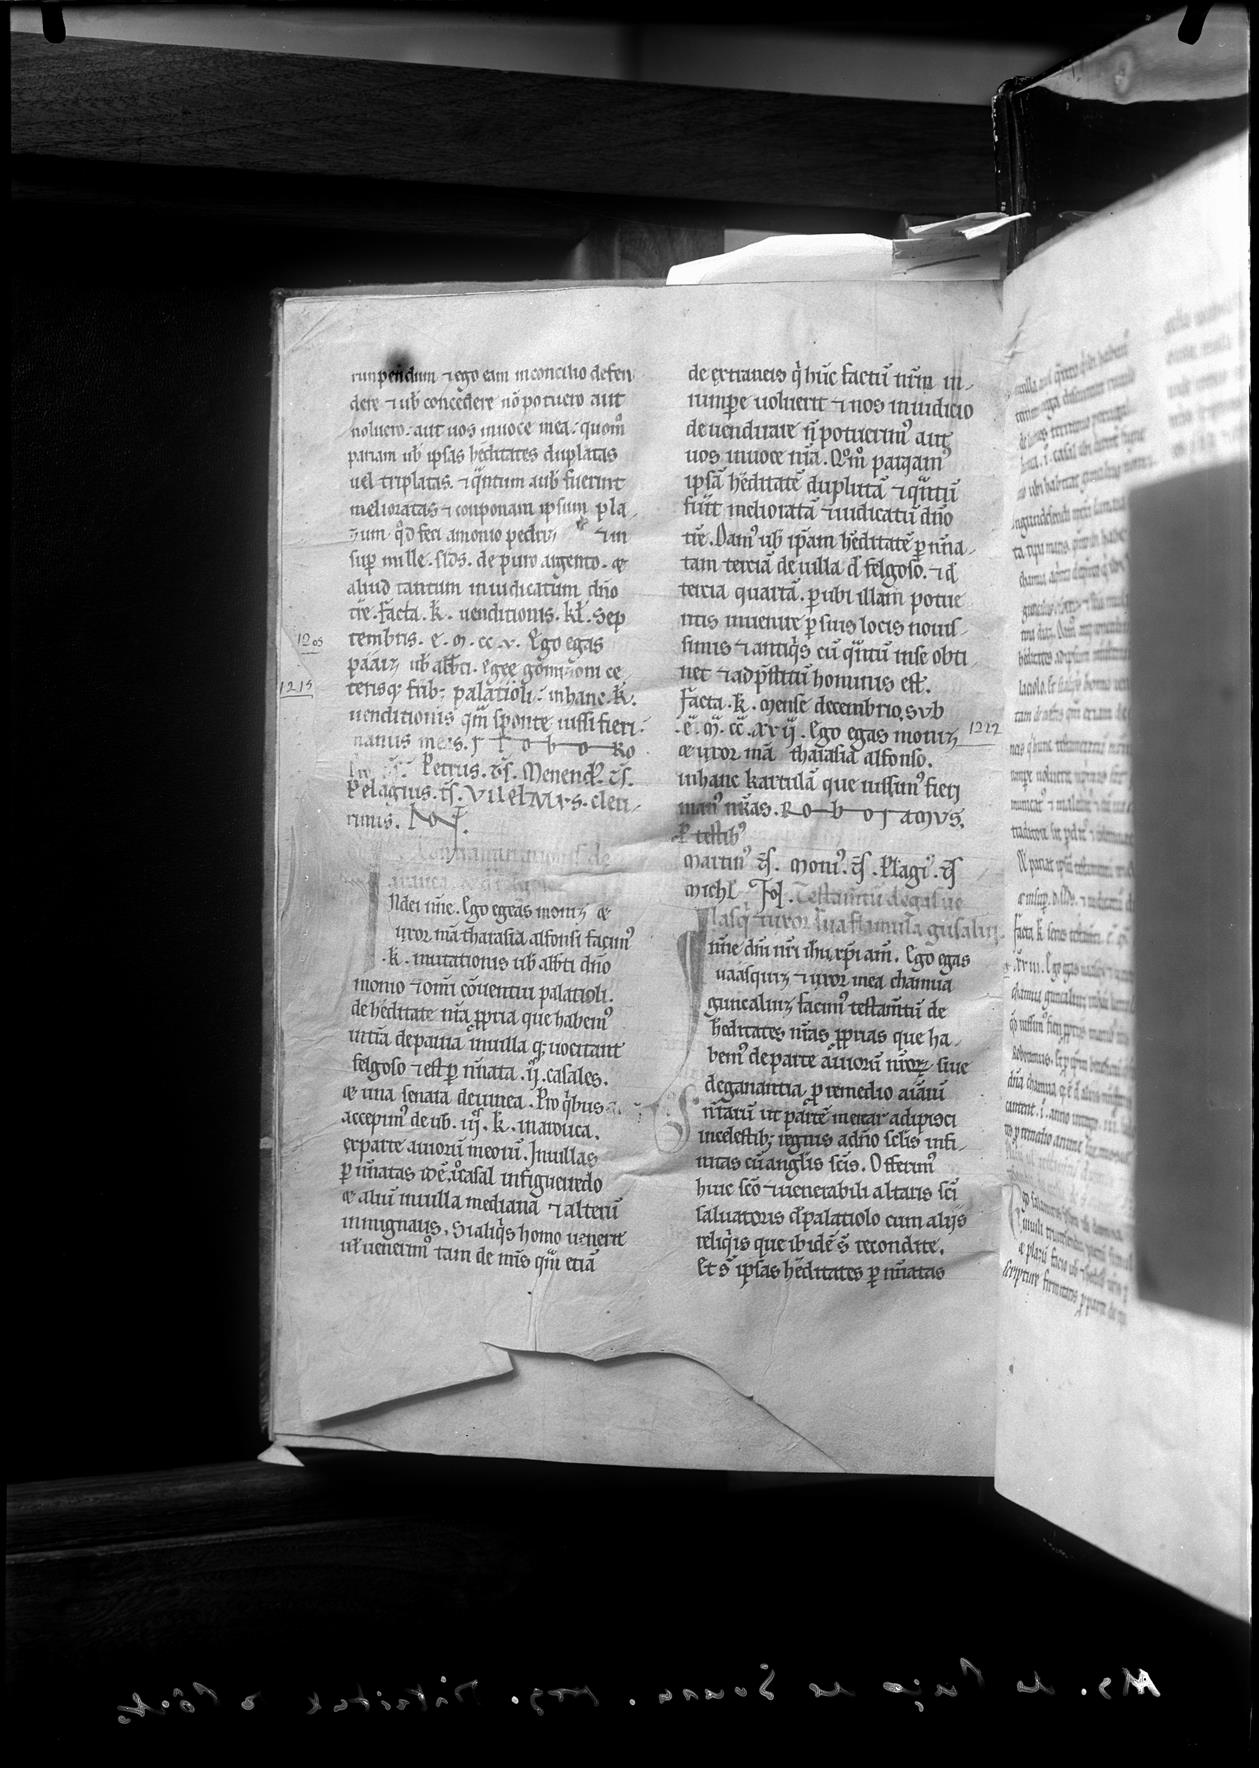 Obra manuscrita dos séculos XII e XIII